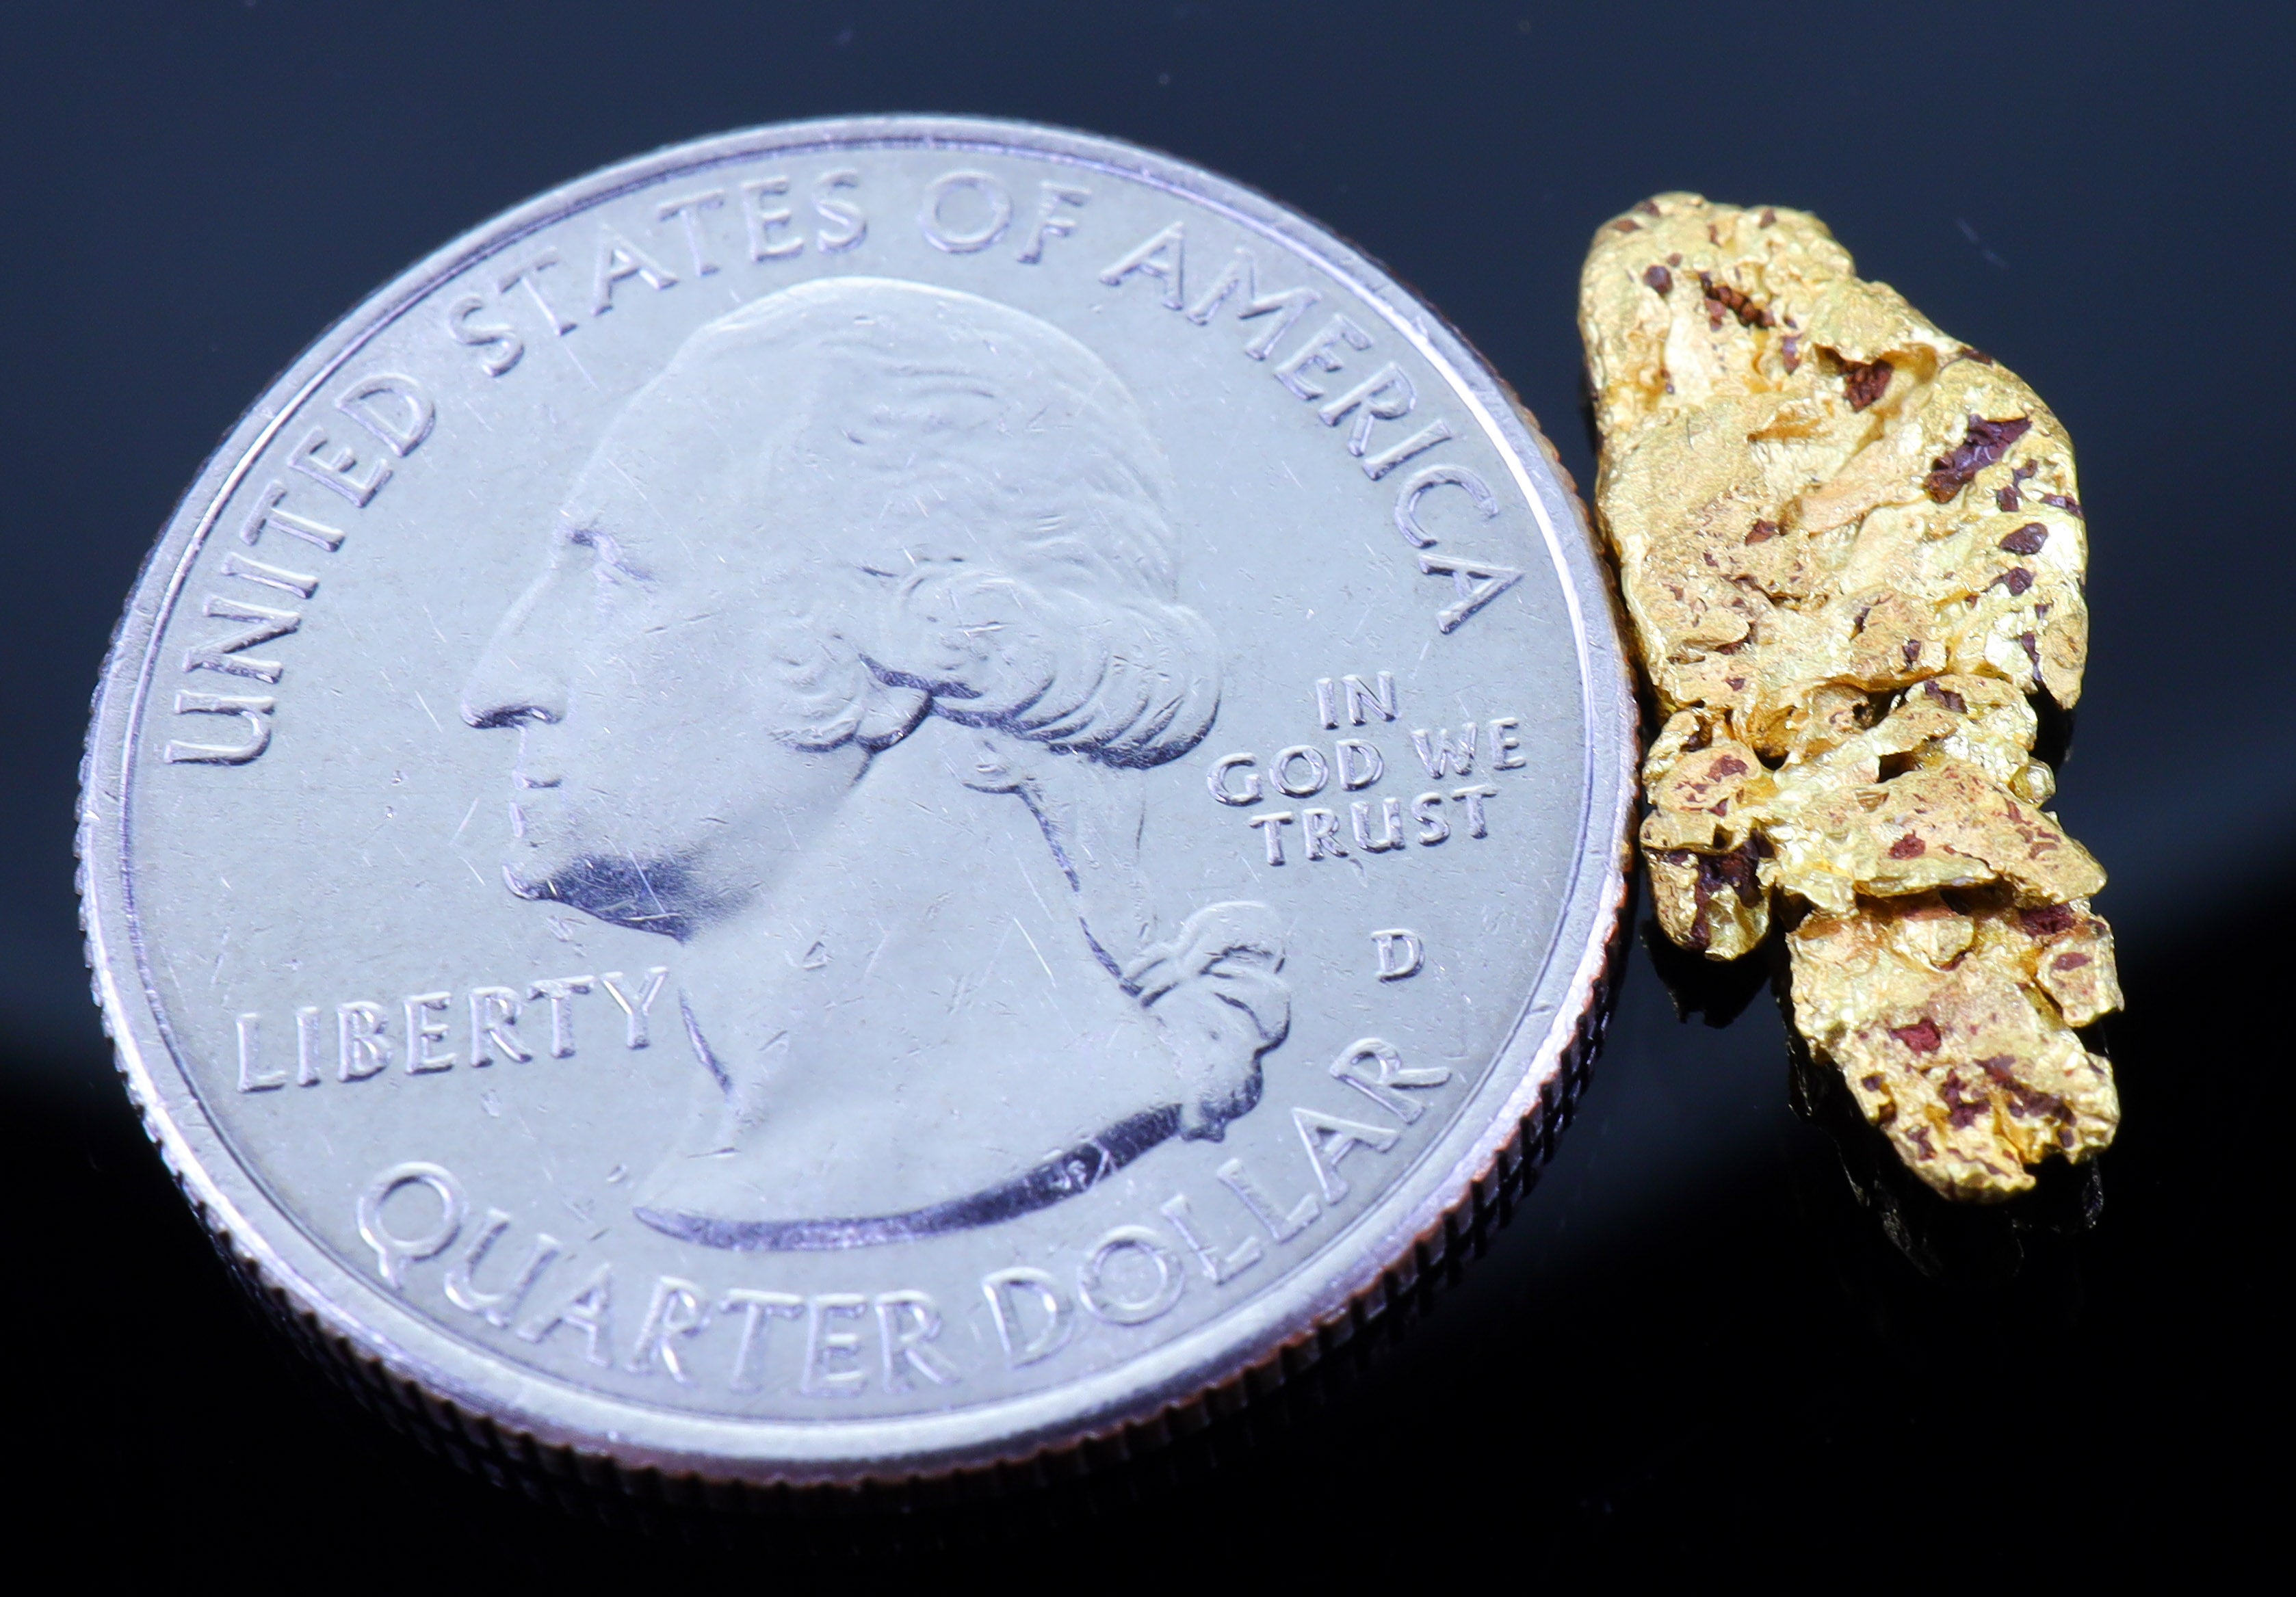 #13 Brazil Crystalline Dendretic Natural Gold Nugget 2.02 grams